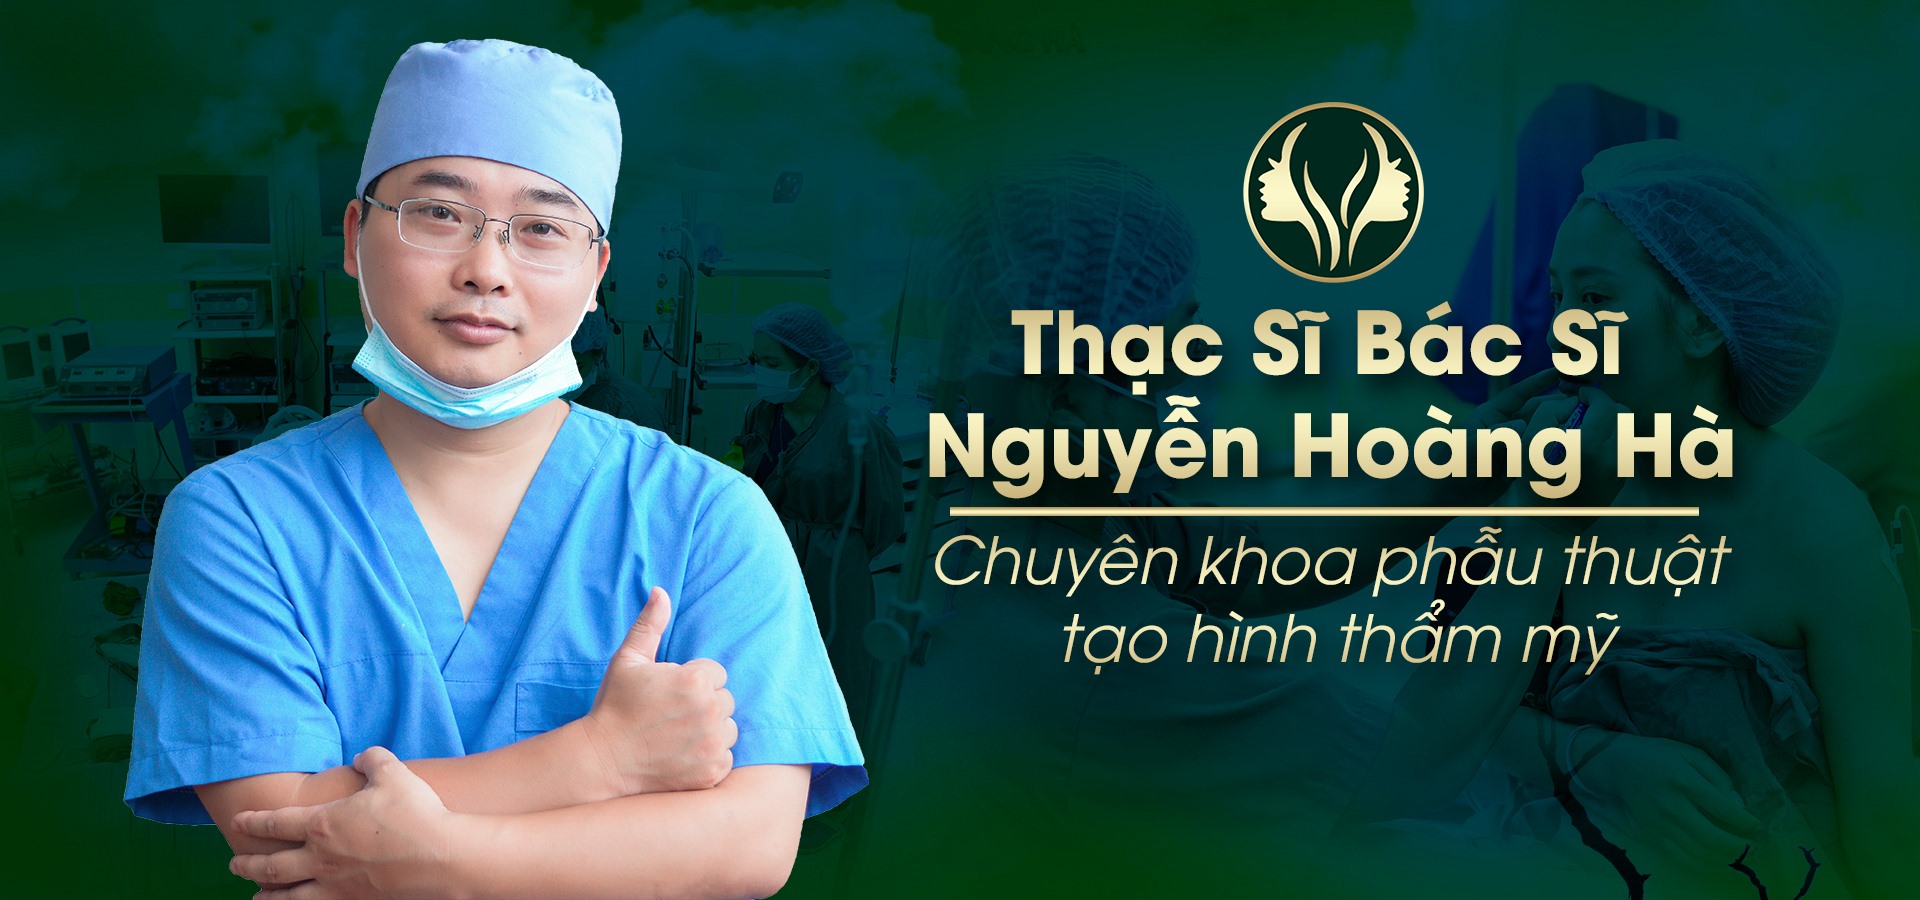 Ths. Bs Nguyễn Hoàng Hà sẽ là người trực tiếp thực hiện các ca phẫu thuật